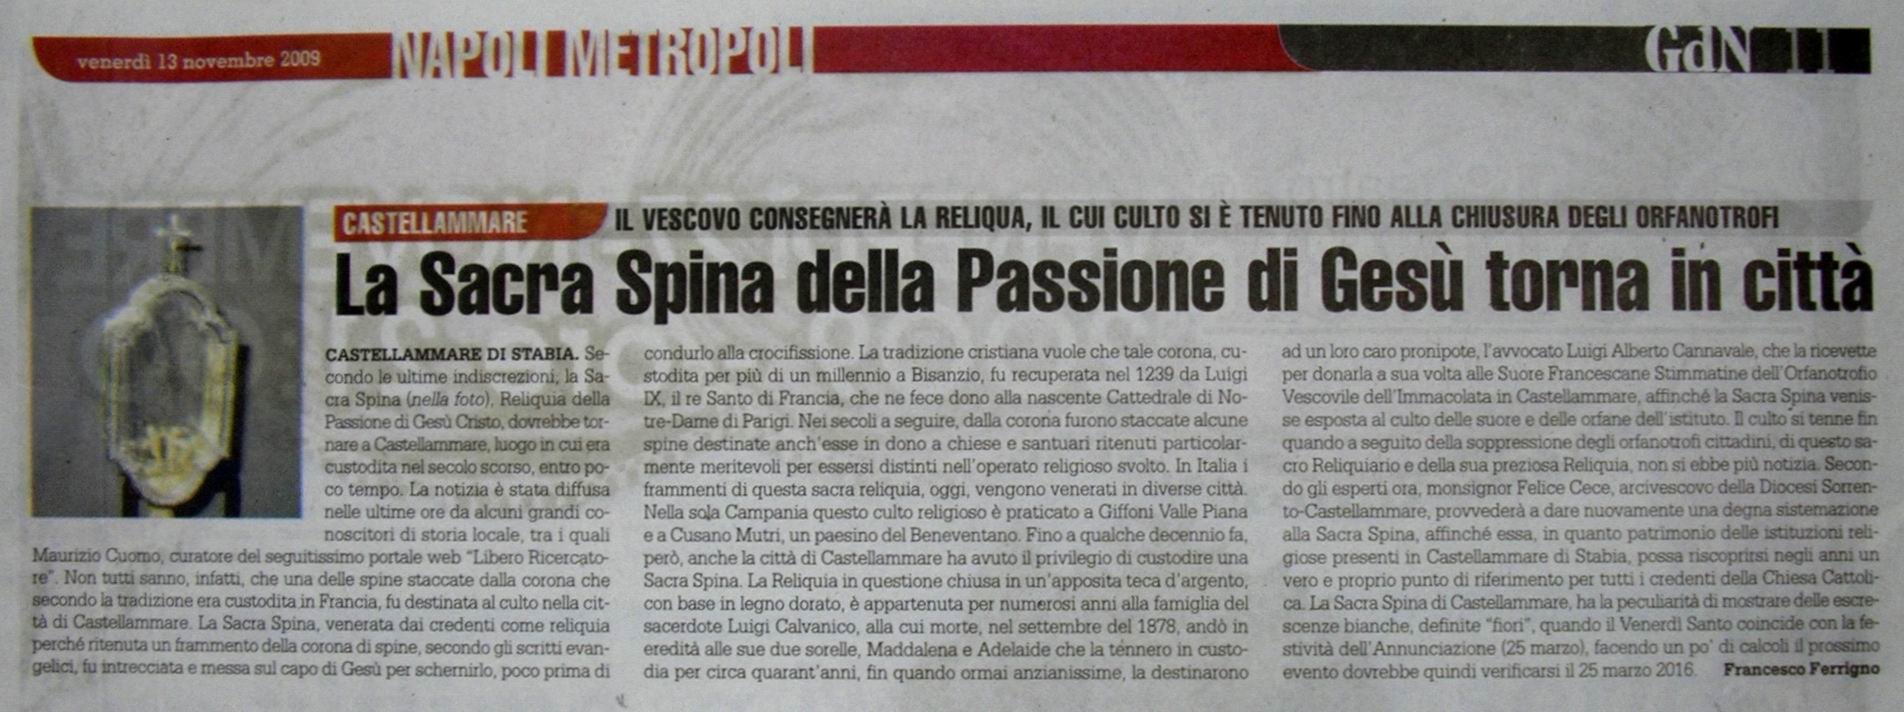 Il Giornale di Napoli – Francesco Ferrigno (13 novembre 2009)